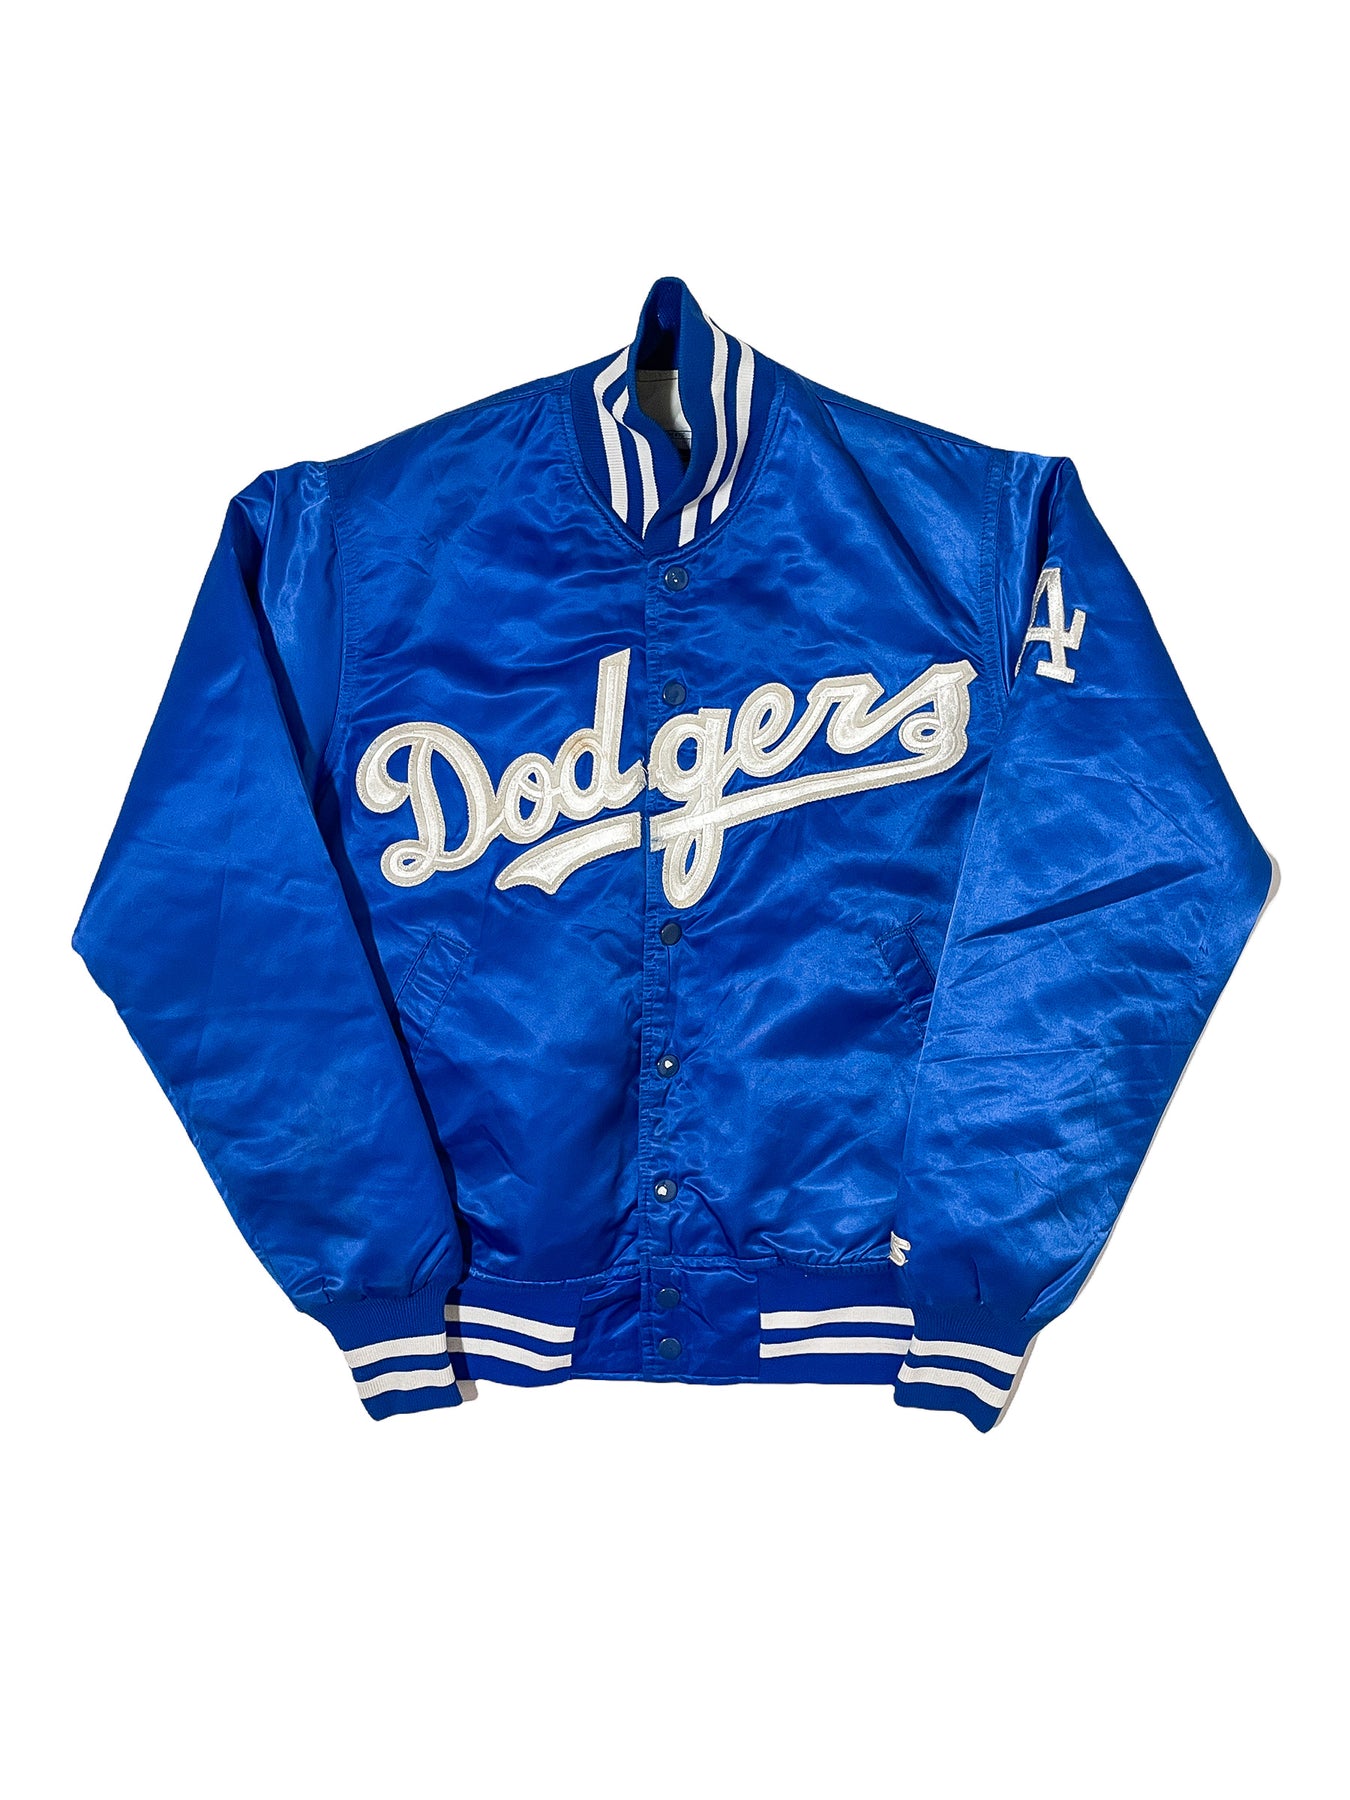 STARTER, Shirts, Rare Vintage Los Angeles Dodgers Starter Jersey La